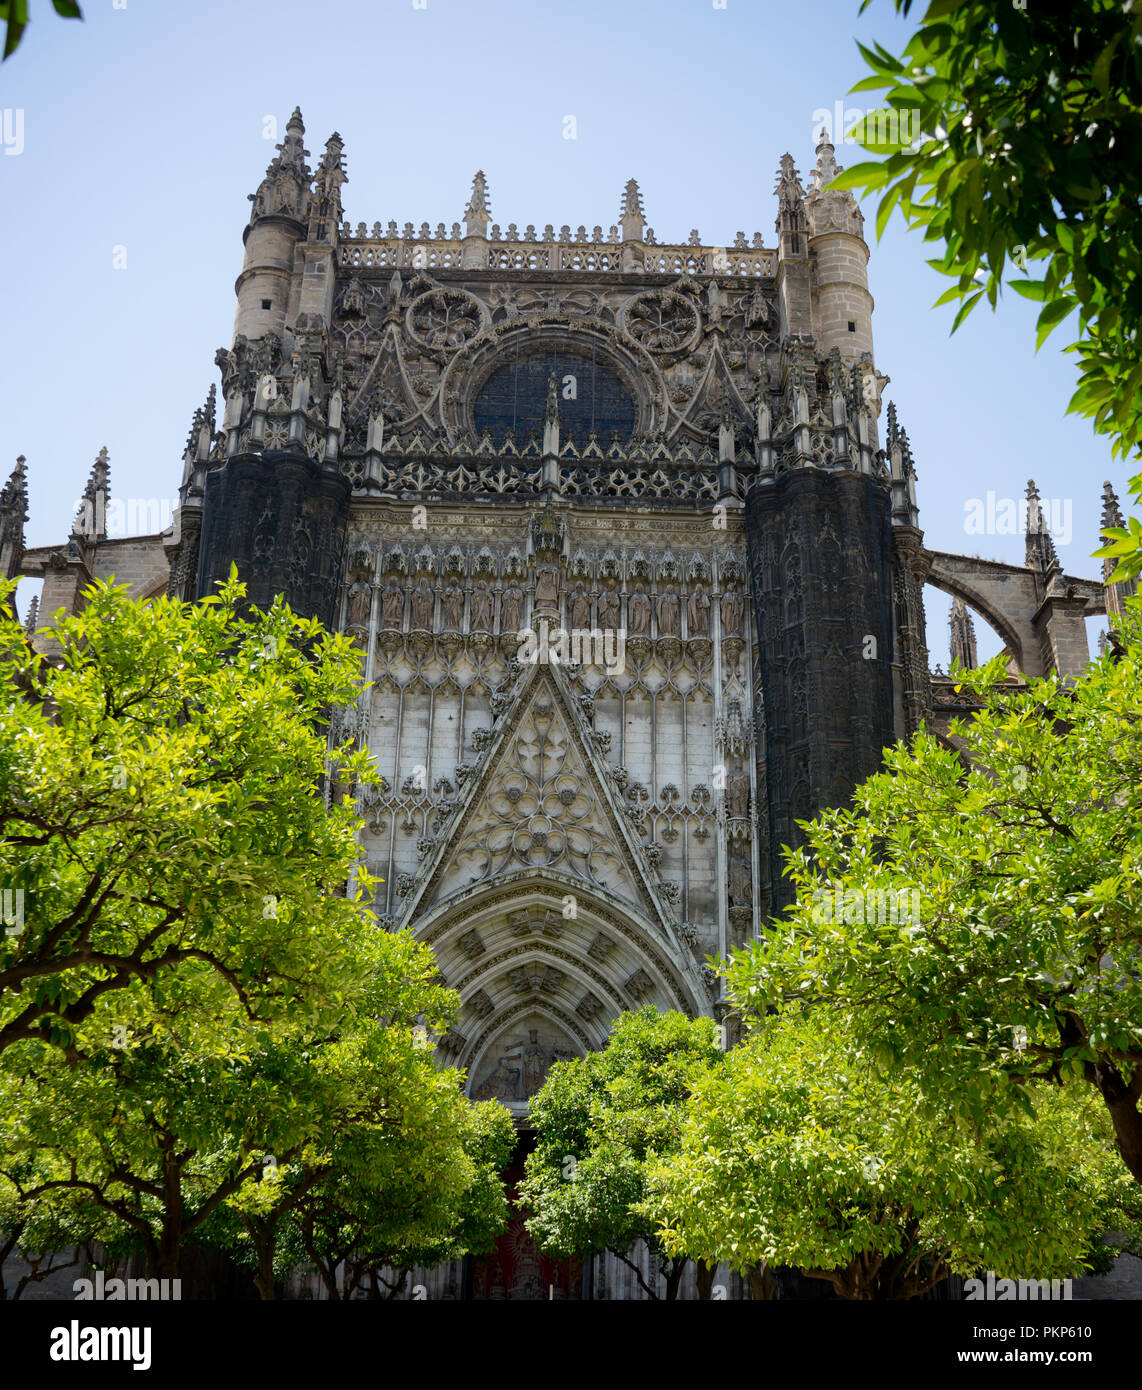 Sevilla, Spanien - 19. Juni 2017: Die Fassade der gotischen Kirche in Sevilla, Spanien, Europa. Die Kathedrale von Sevilla, die auch als Kathedrale der Heiligen Maria bekannt Stockfoto